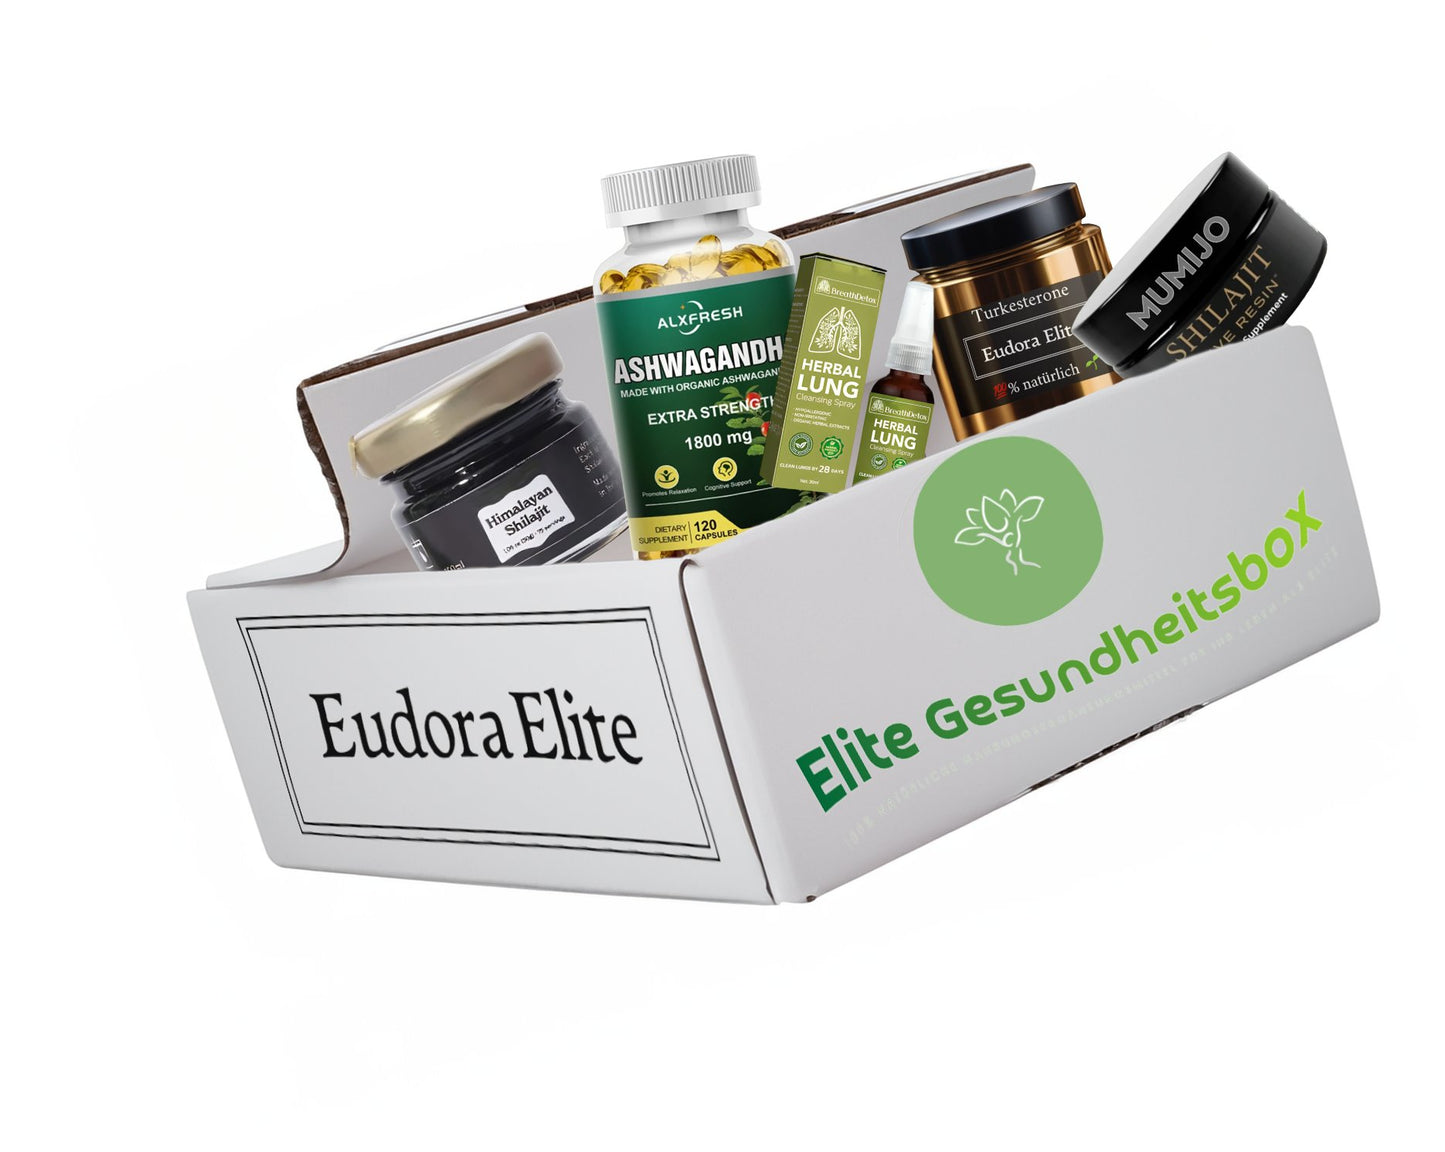 Elite Gesundheitsbox  | Combo-Box mit 100% natürlichen Nahrungsergänzungsmitteln für ein optimales Leben